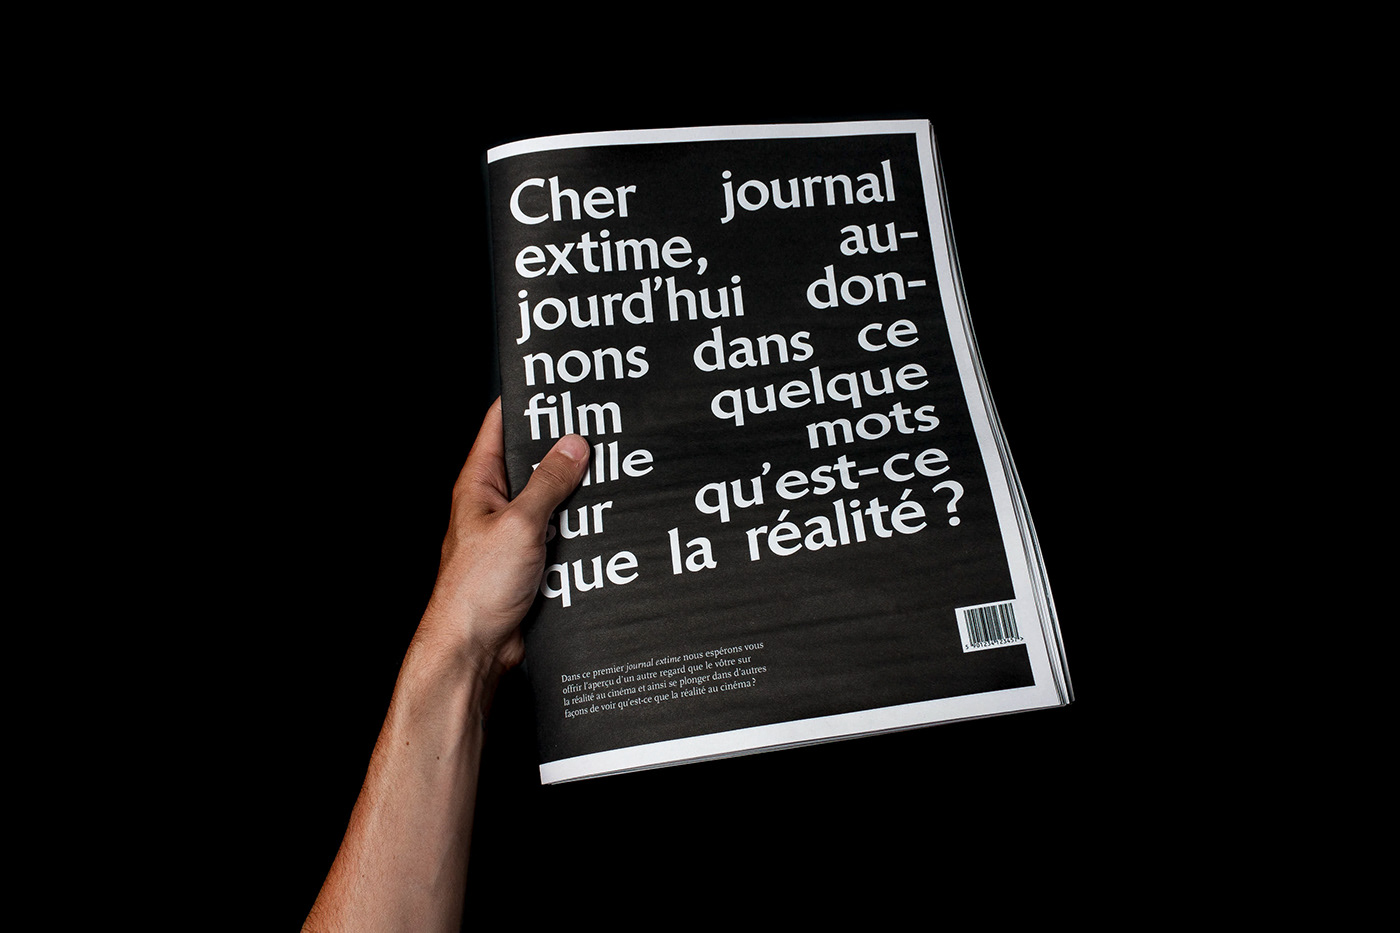 magazine Cinema realité reel edition journal deformation newspaper black white noir blanc